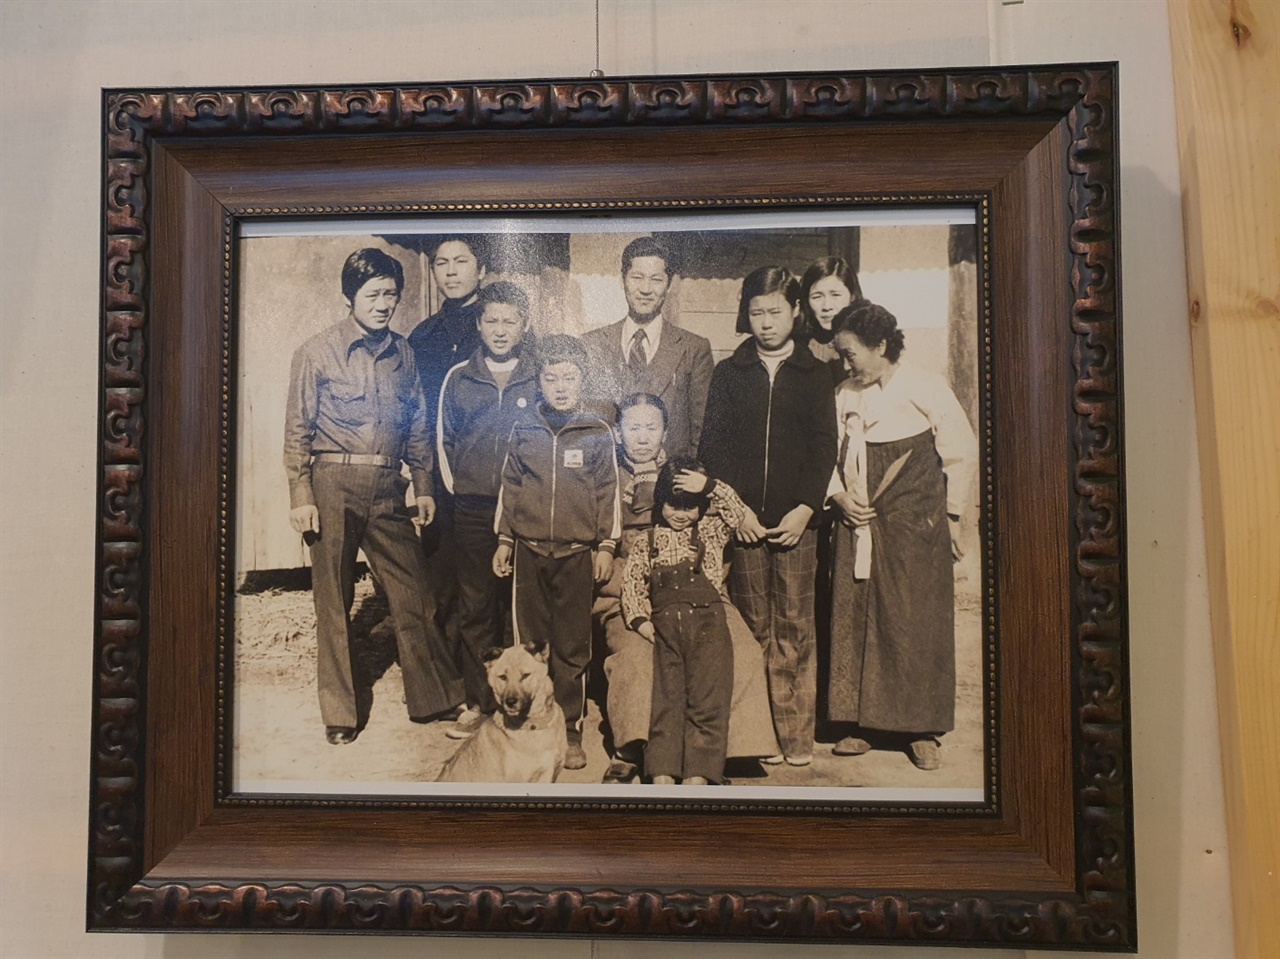 마을박물관에 전시된 주민의 가족사진